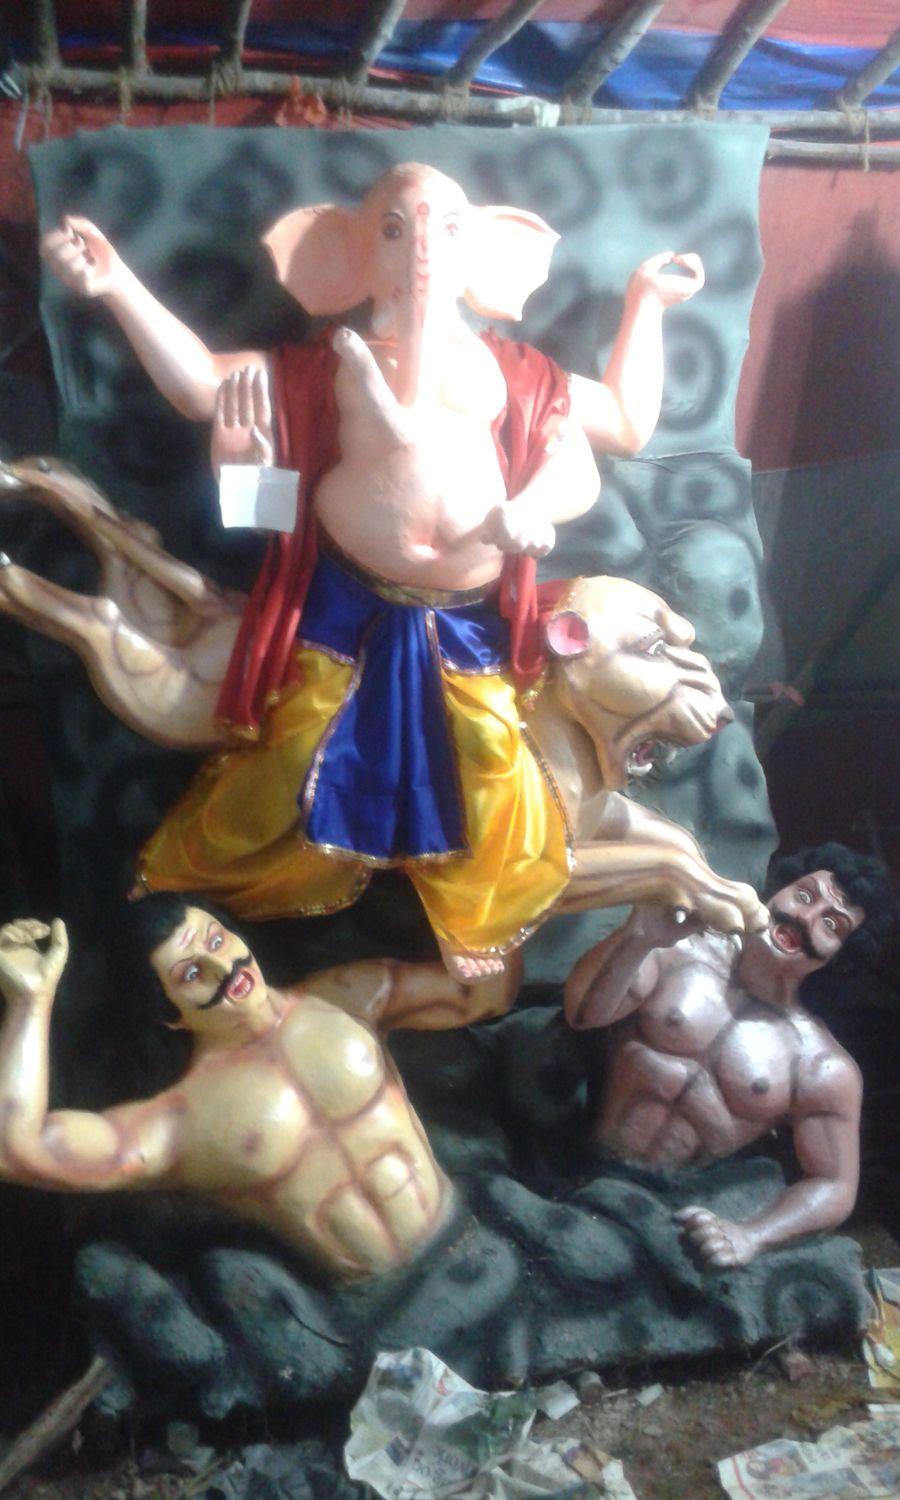 Happy Ganesh Chaturthi 2015 Latest Images